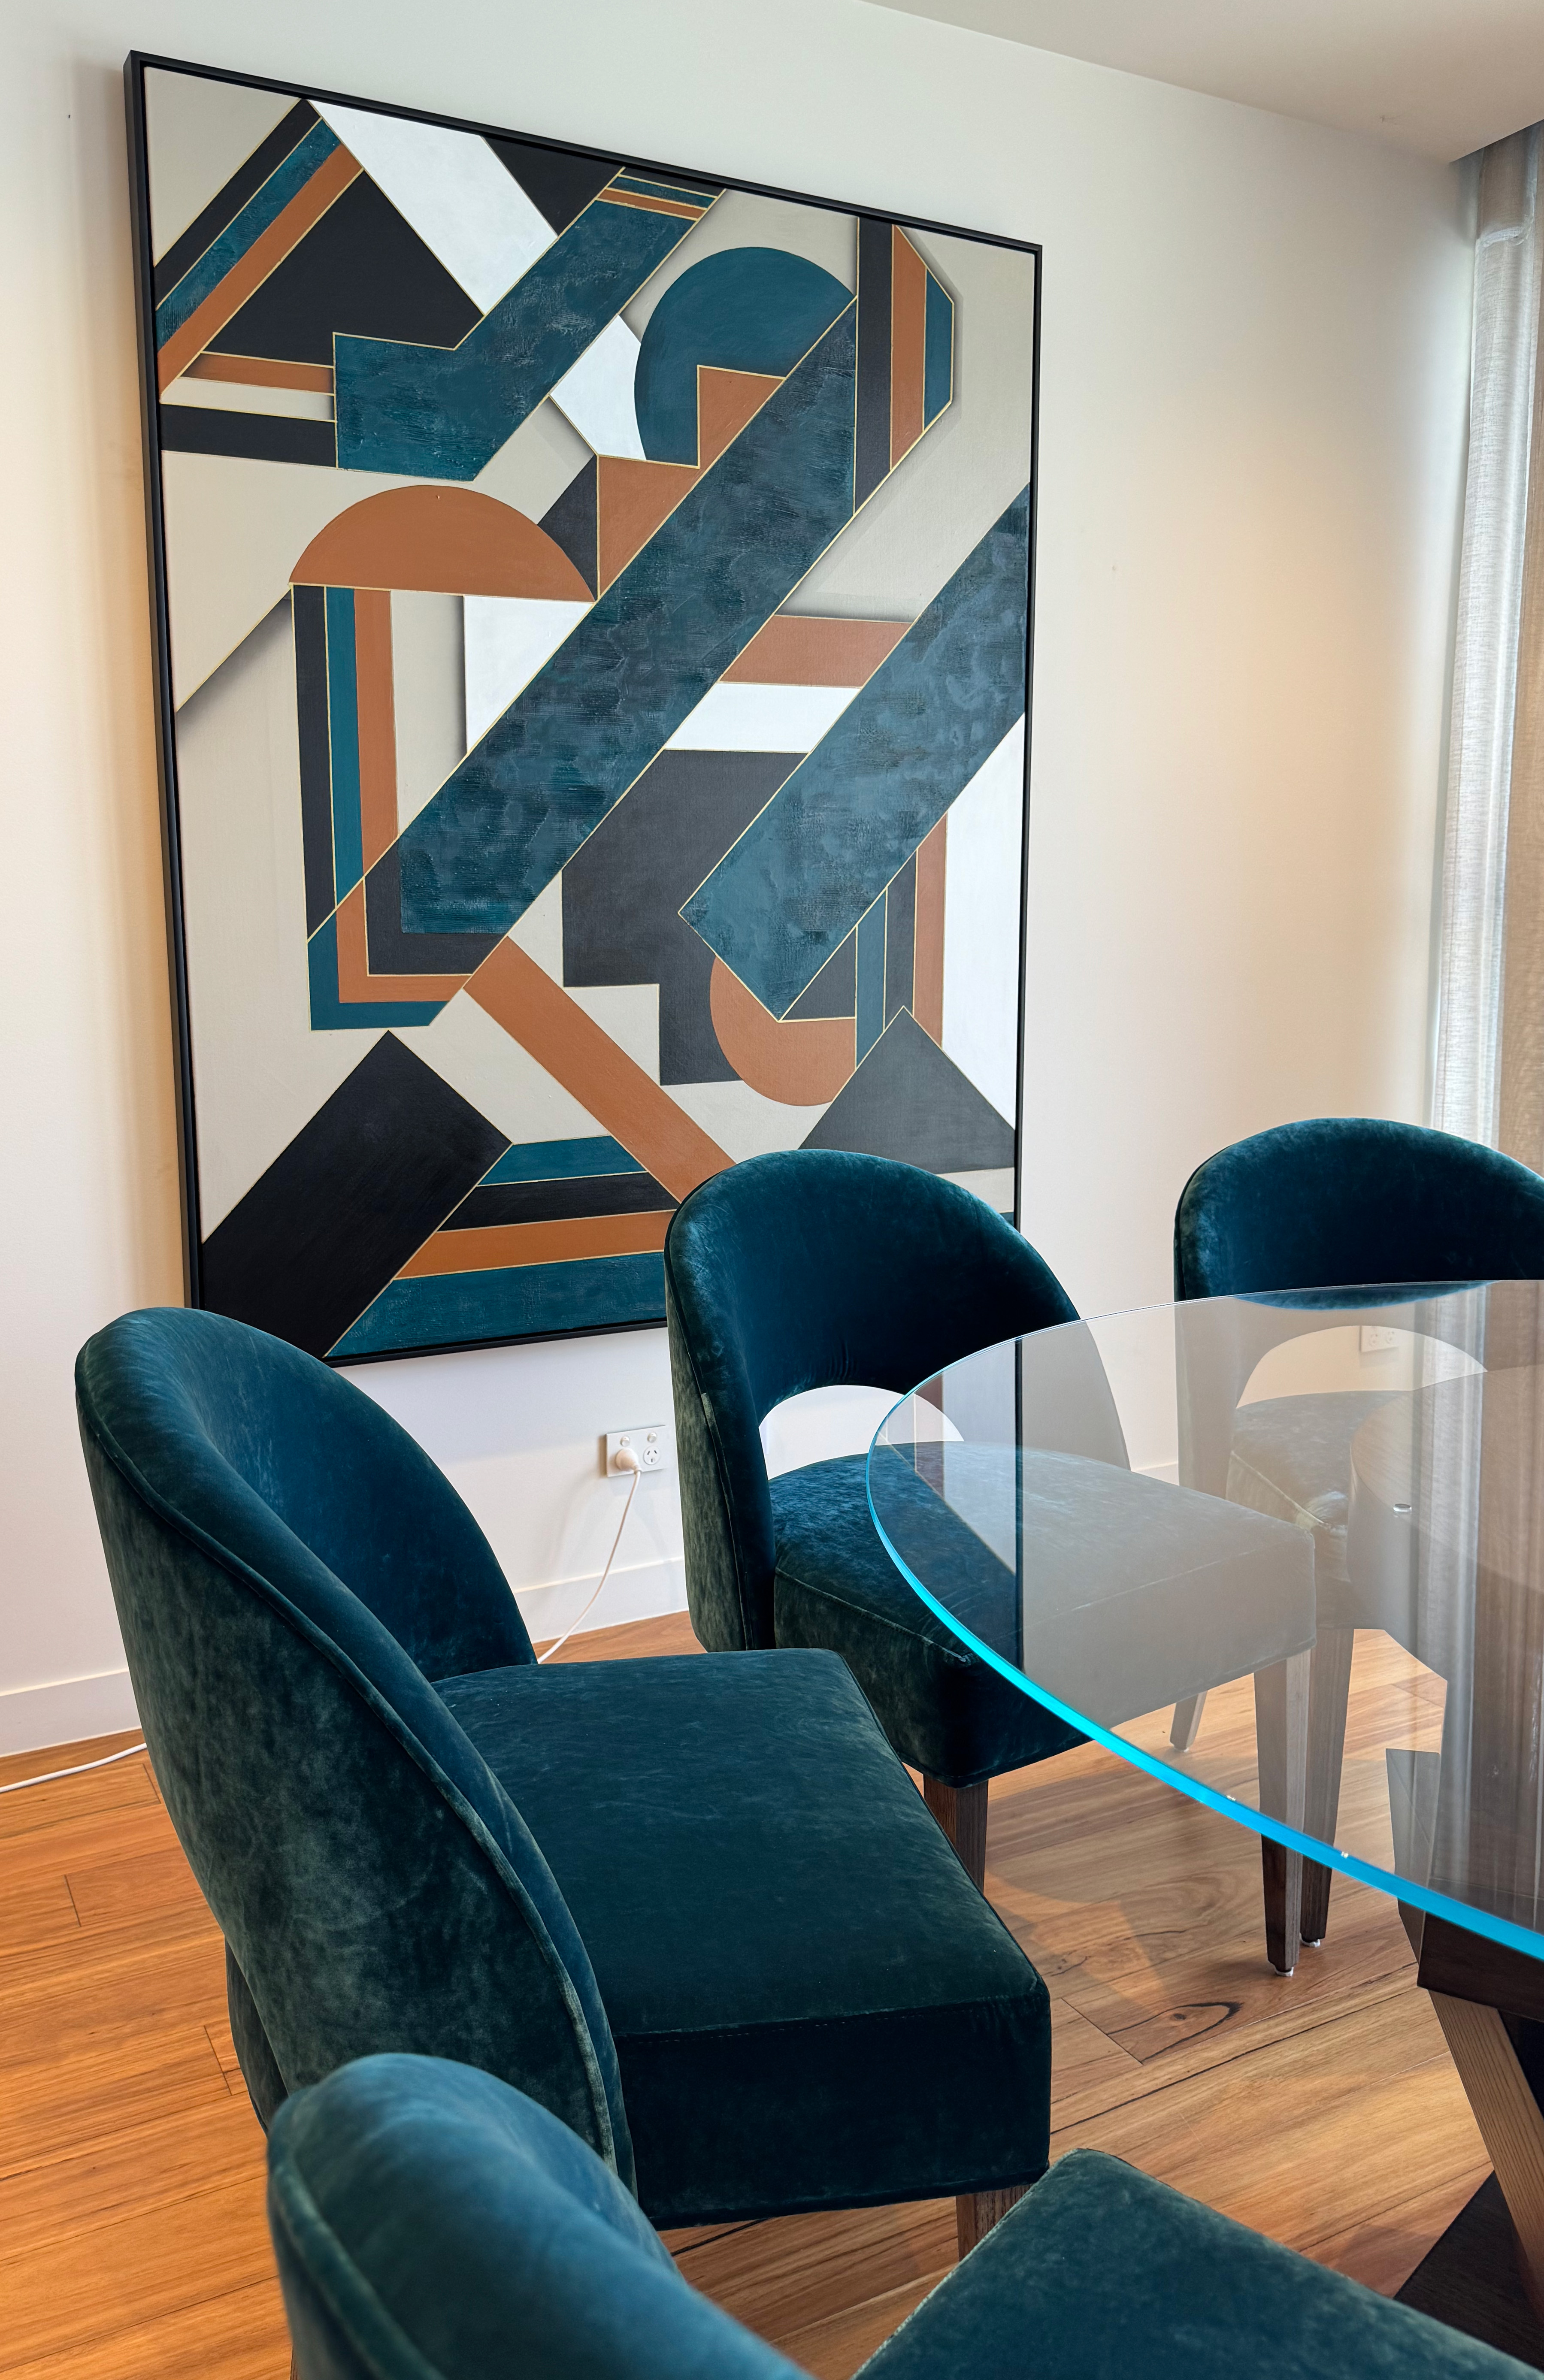 Mid Century Modern Dining Chair, by Luxury Interior Designer, Interior Design Mark Alexander Design